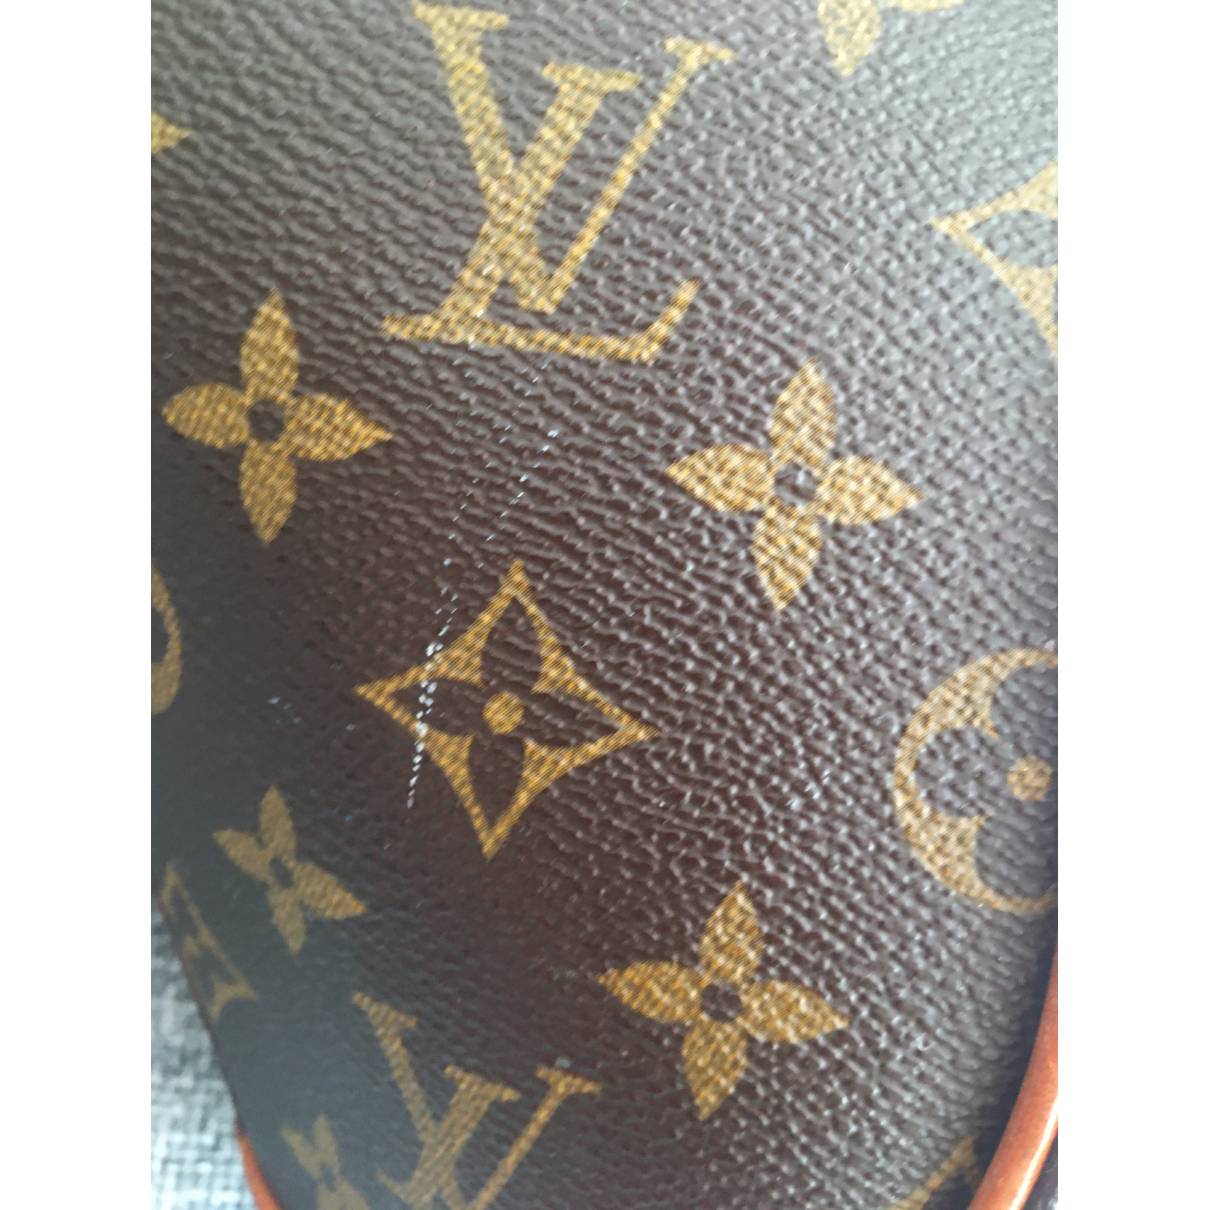 Authentic Louis Vuitton Ellipse MM Vintage Leather Hand Bag -  Denmark